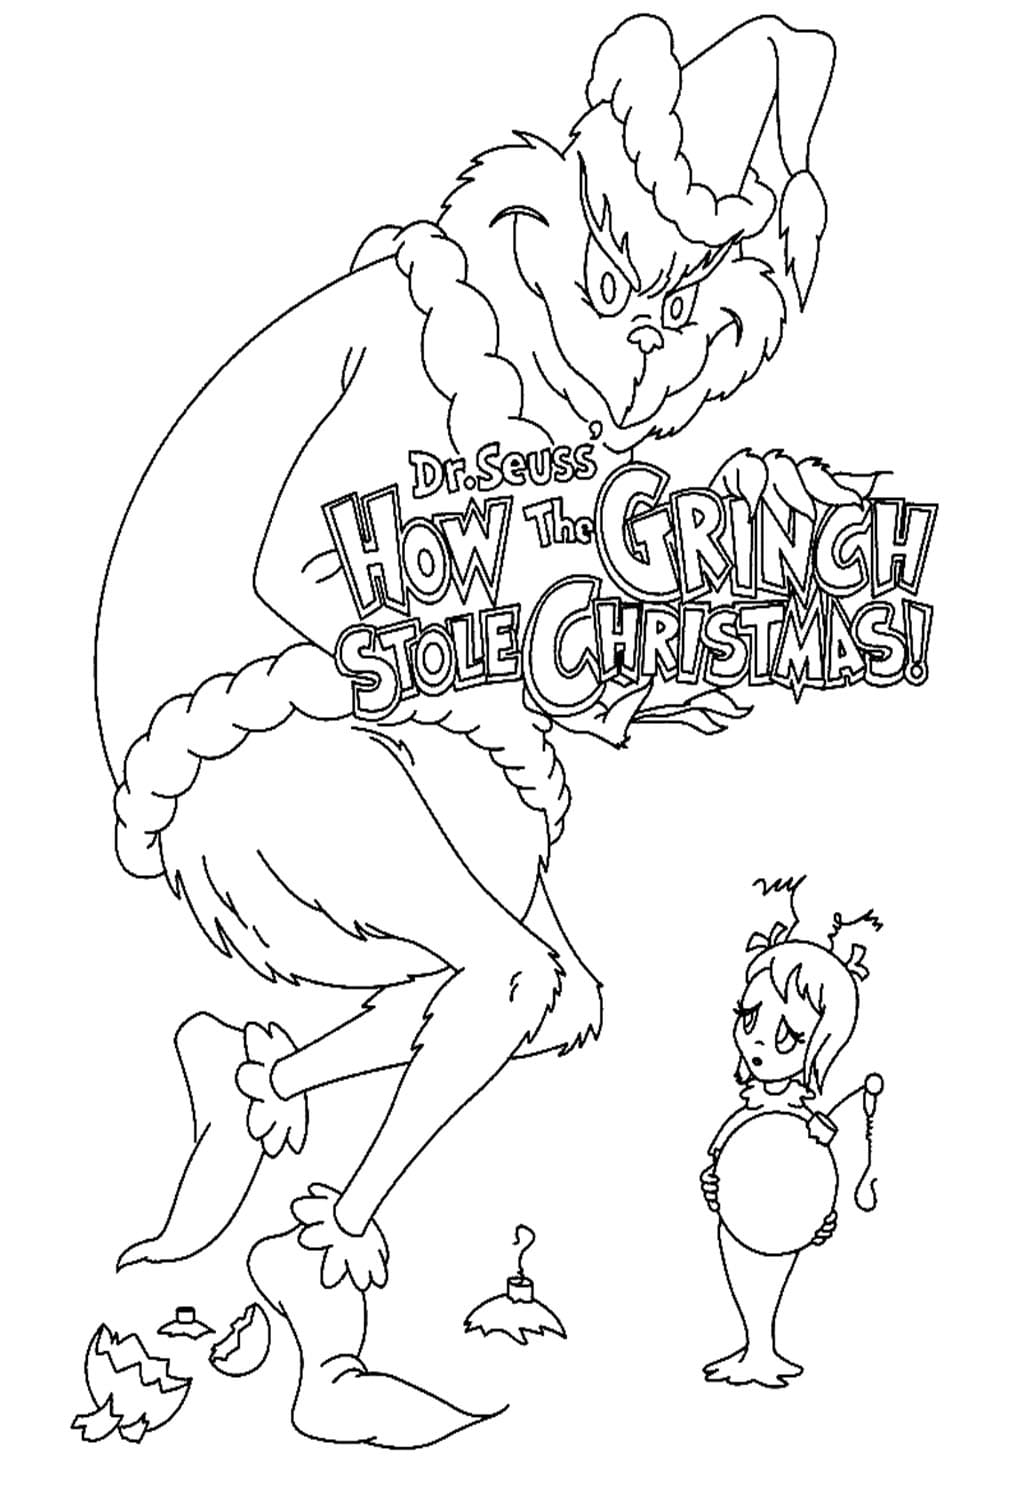 O Grinch roubou o pôster de Natal do Grinch